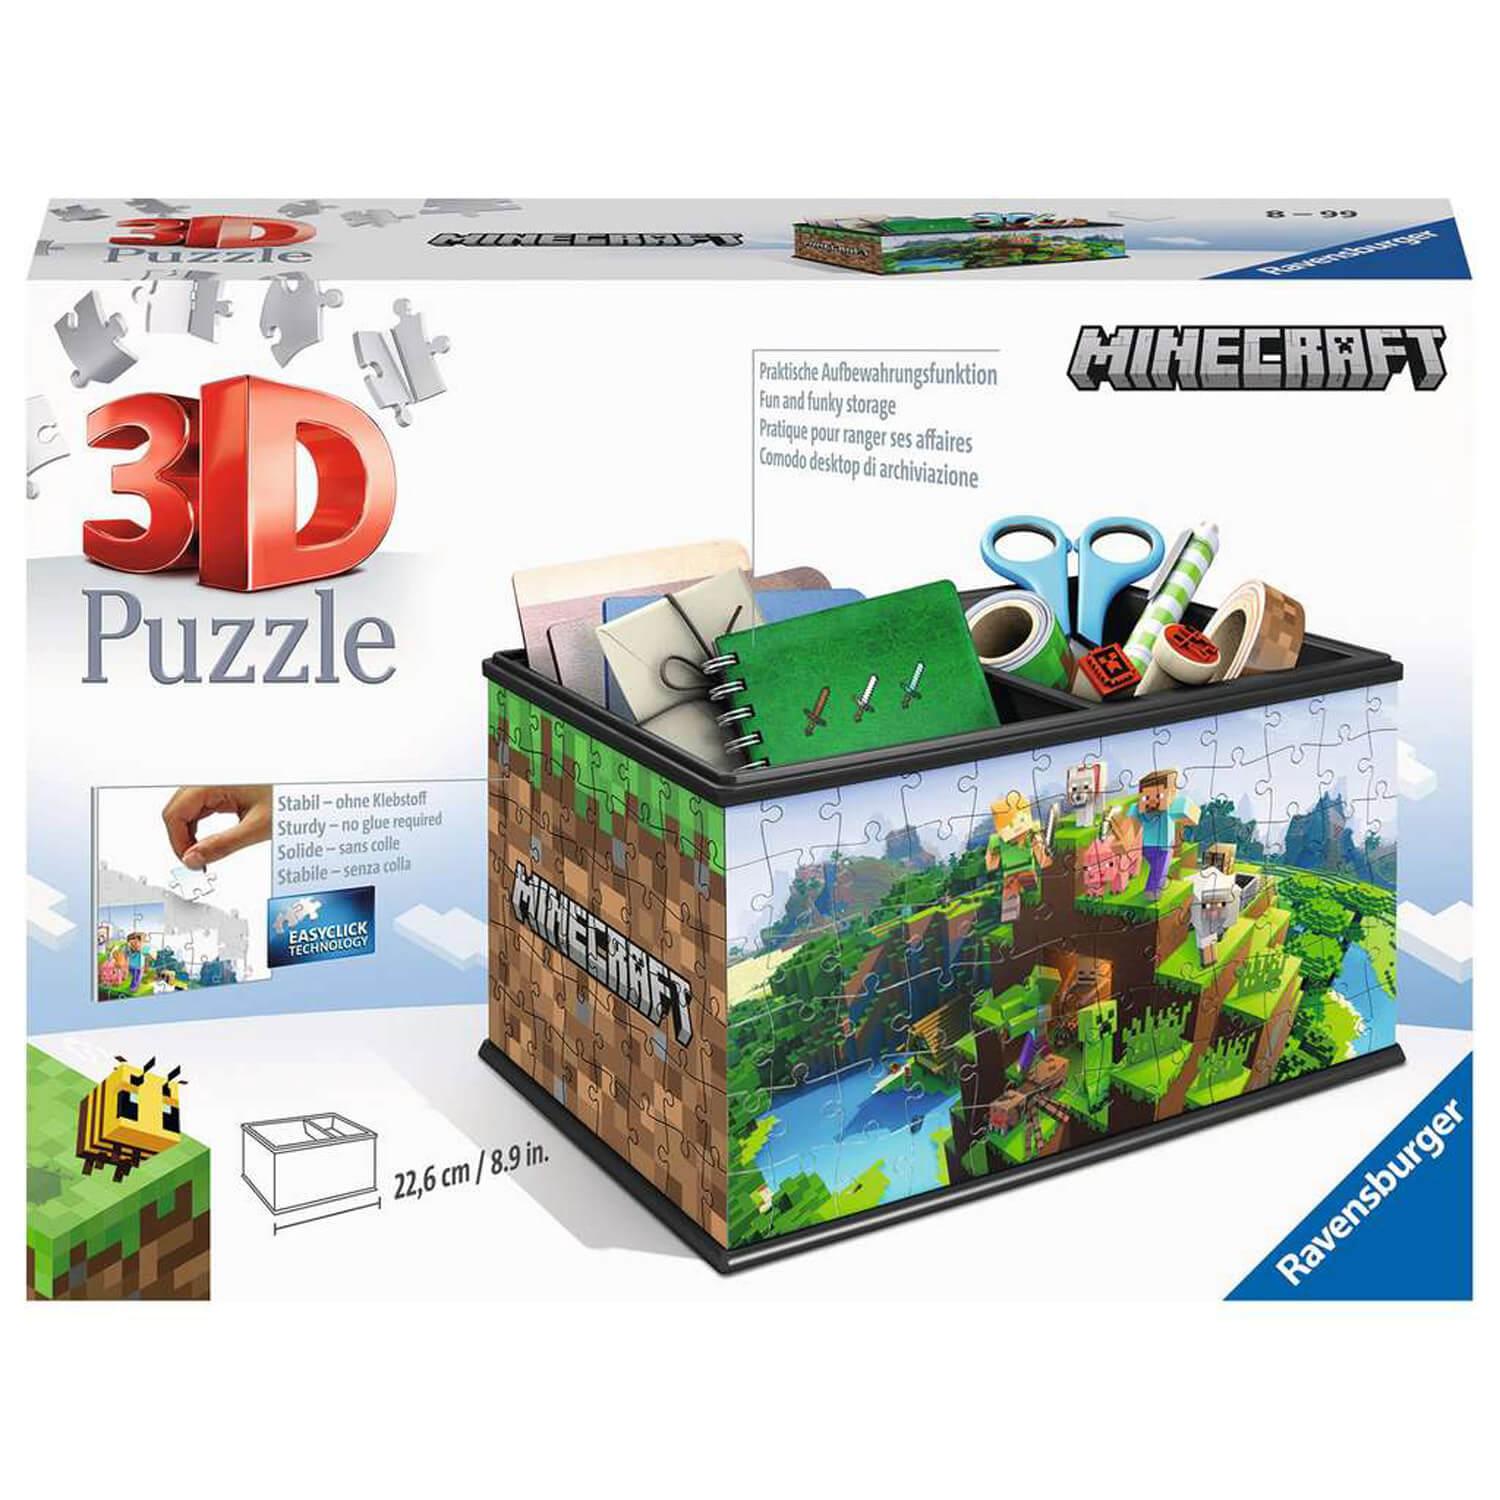 Puzzle 3D 216 pièces : Boite de rangement - Pokémon - Ravensburger - Rue  des Puzzles